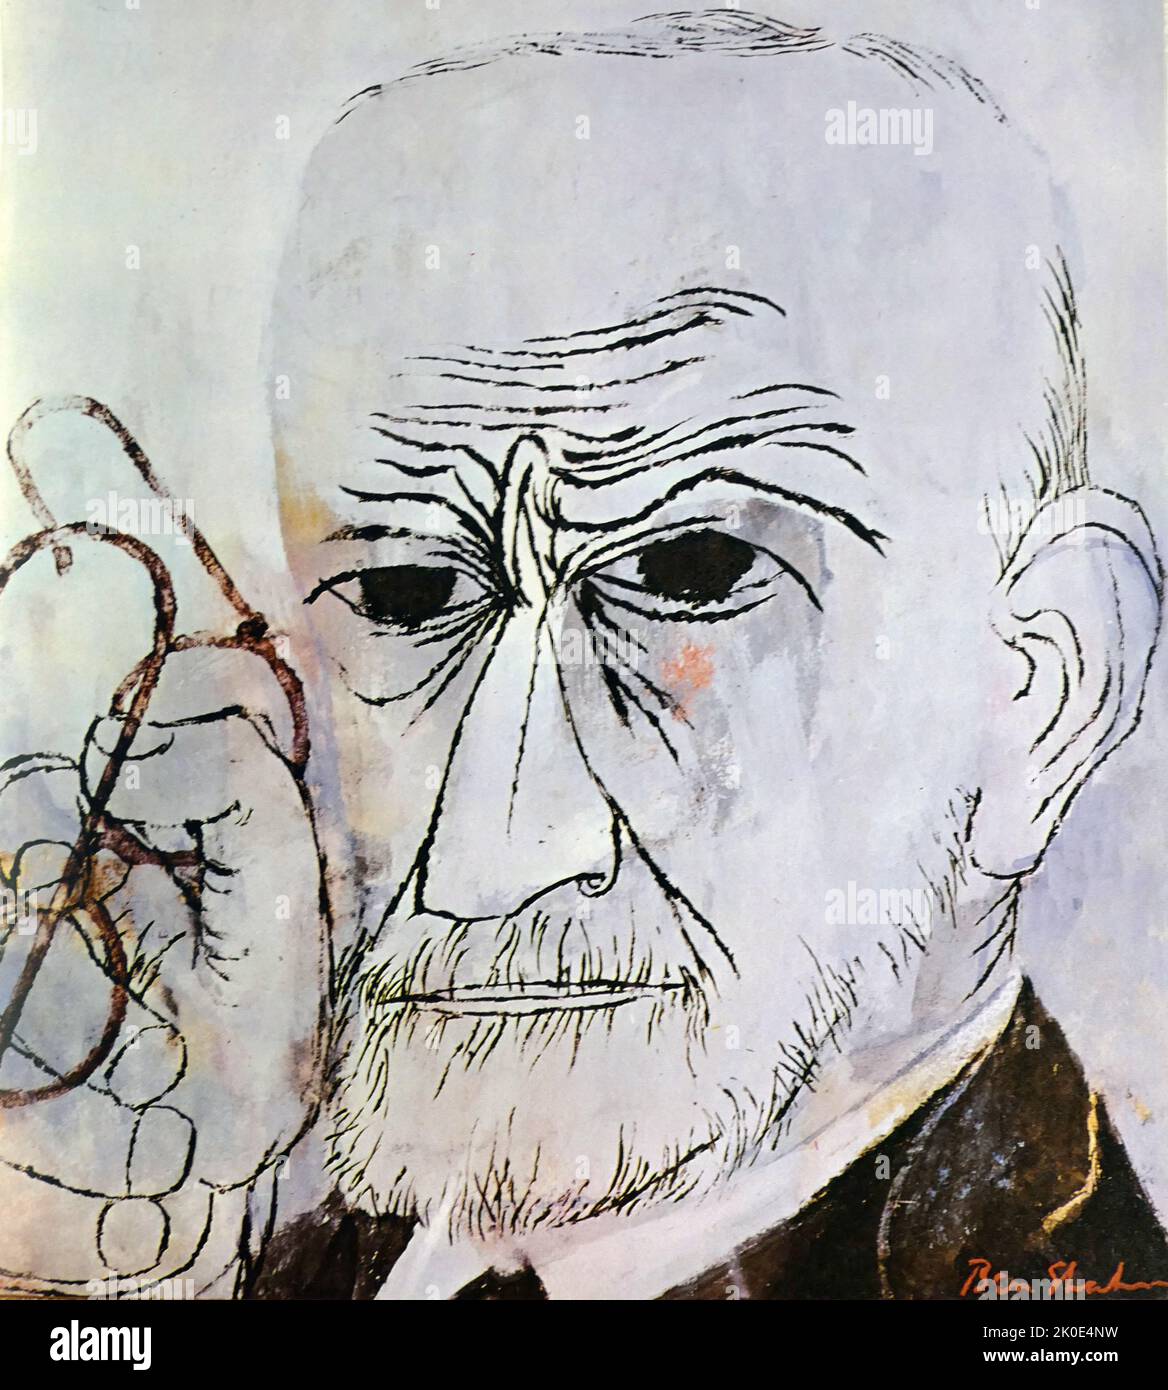 Sigmund Freud (1856 - 23 septembre 1939) neurologue autrichien et fondateur de la psychanalyse, une méthode clinique de traitement de la psychopathologie par le dialogue entre un patient et un psychanalyste. Portrait de Ben Shahn 1956. Banque D'Images